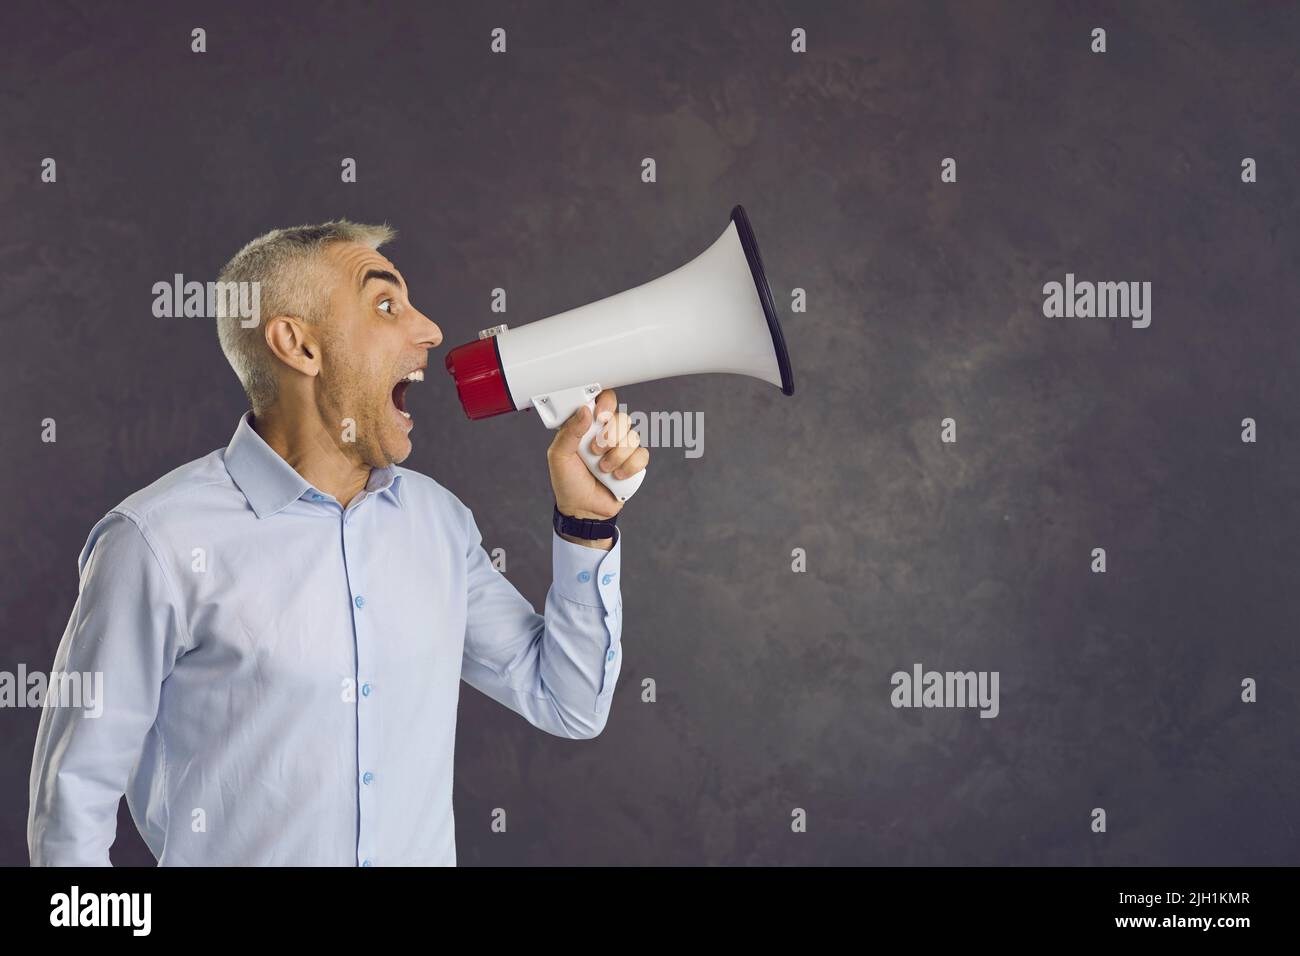 Un homme bruyant avec haut-parleur fait une annonce formidable Banque D'Images